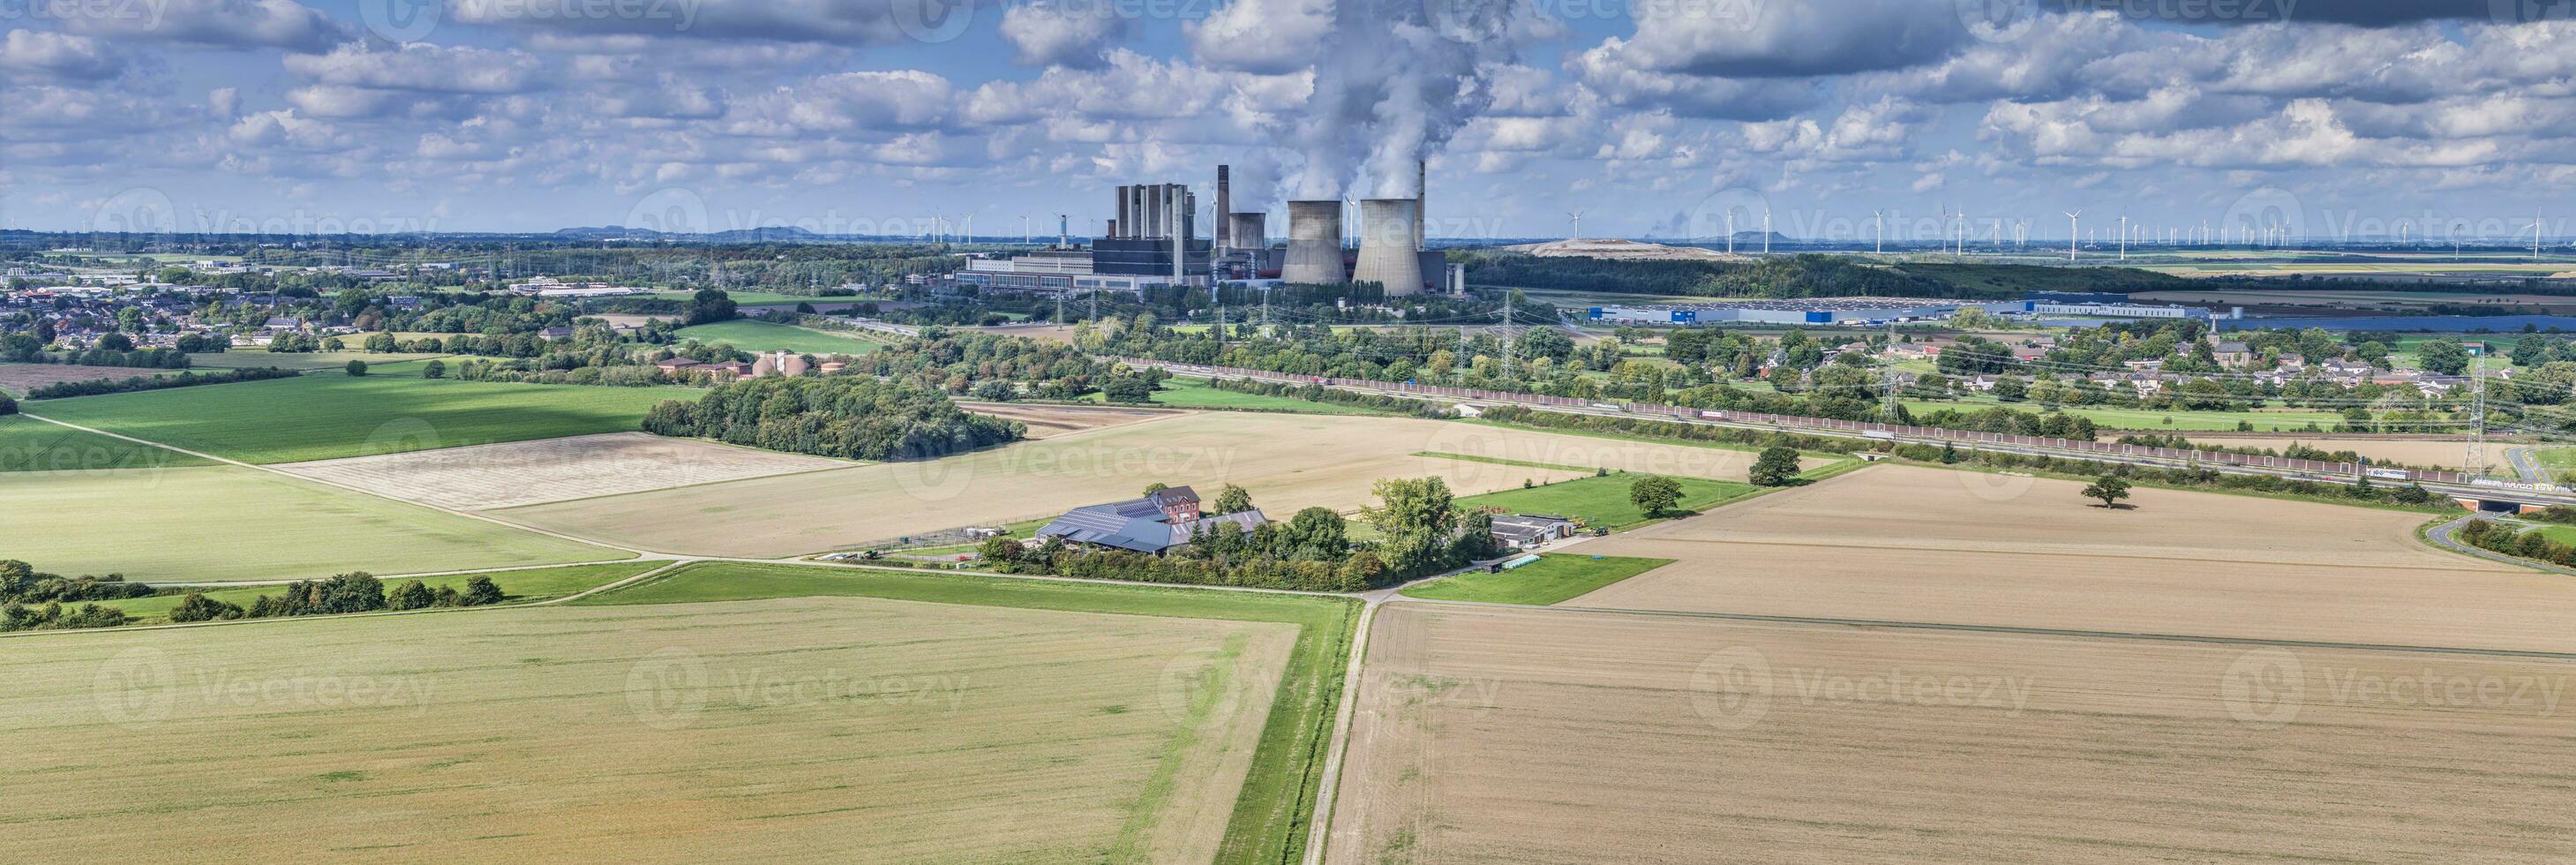 panorama- bild av en koleldad kraft station med rökning skorstenar foto